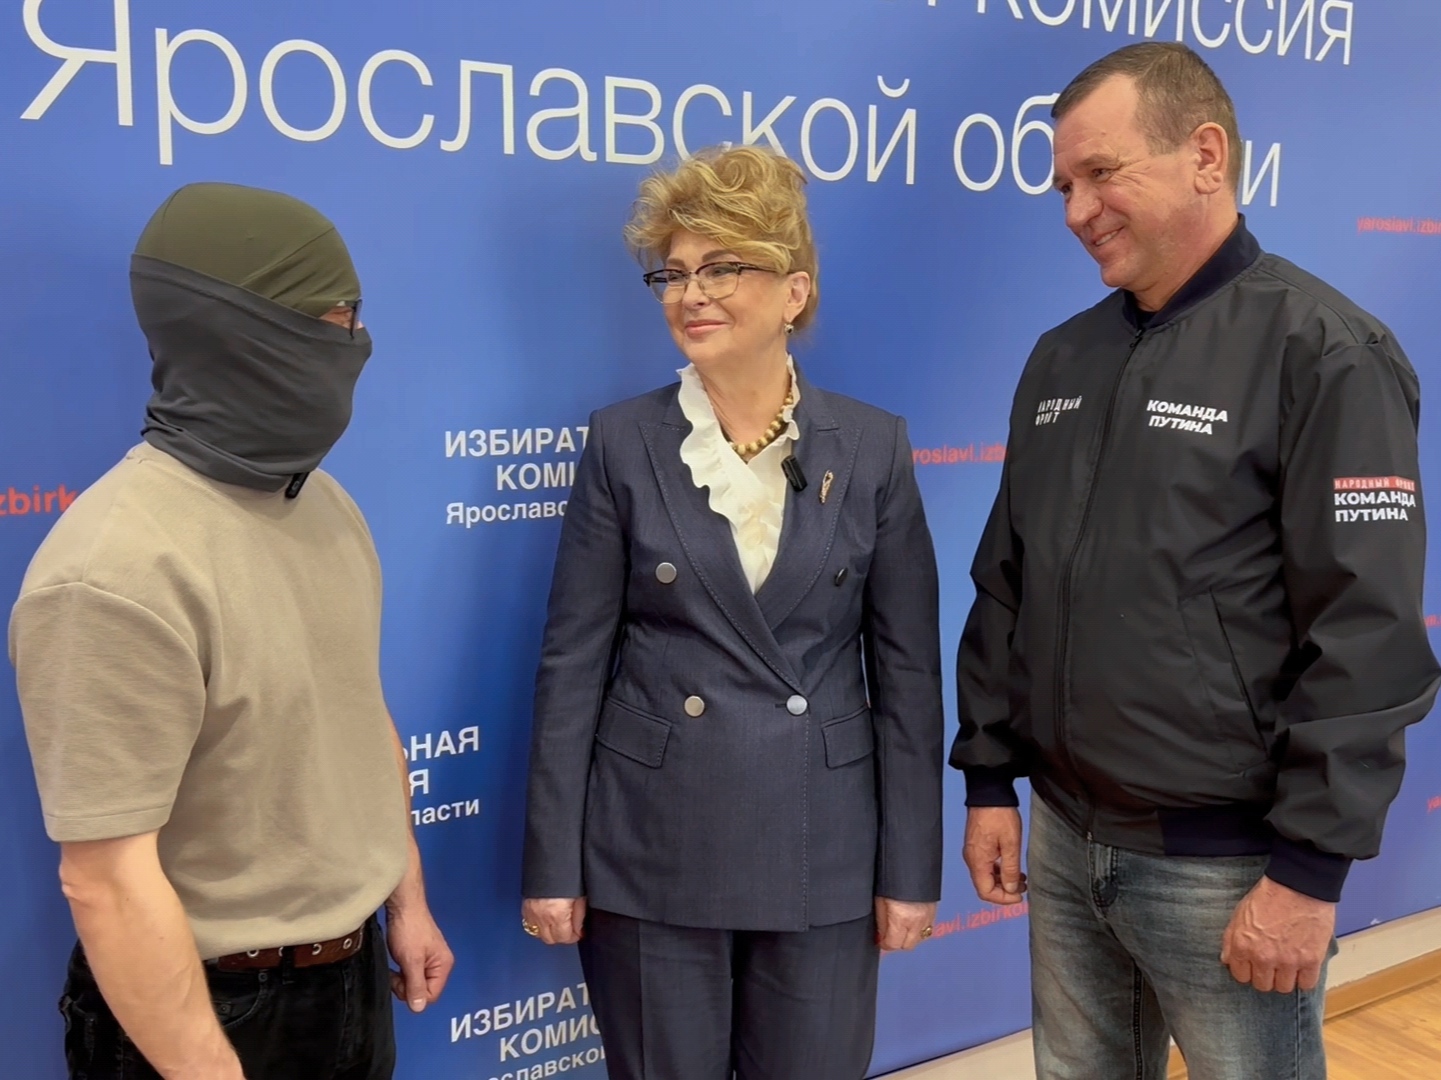 Сотрудники ярославского избиркома помогли в покупке дронов для бойцов СВО